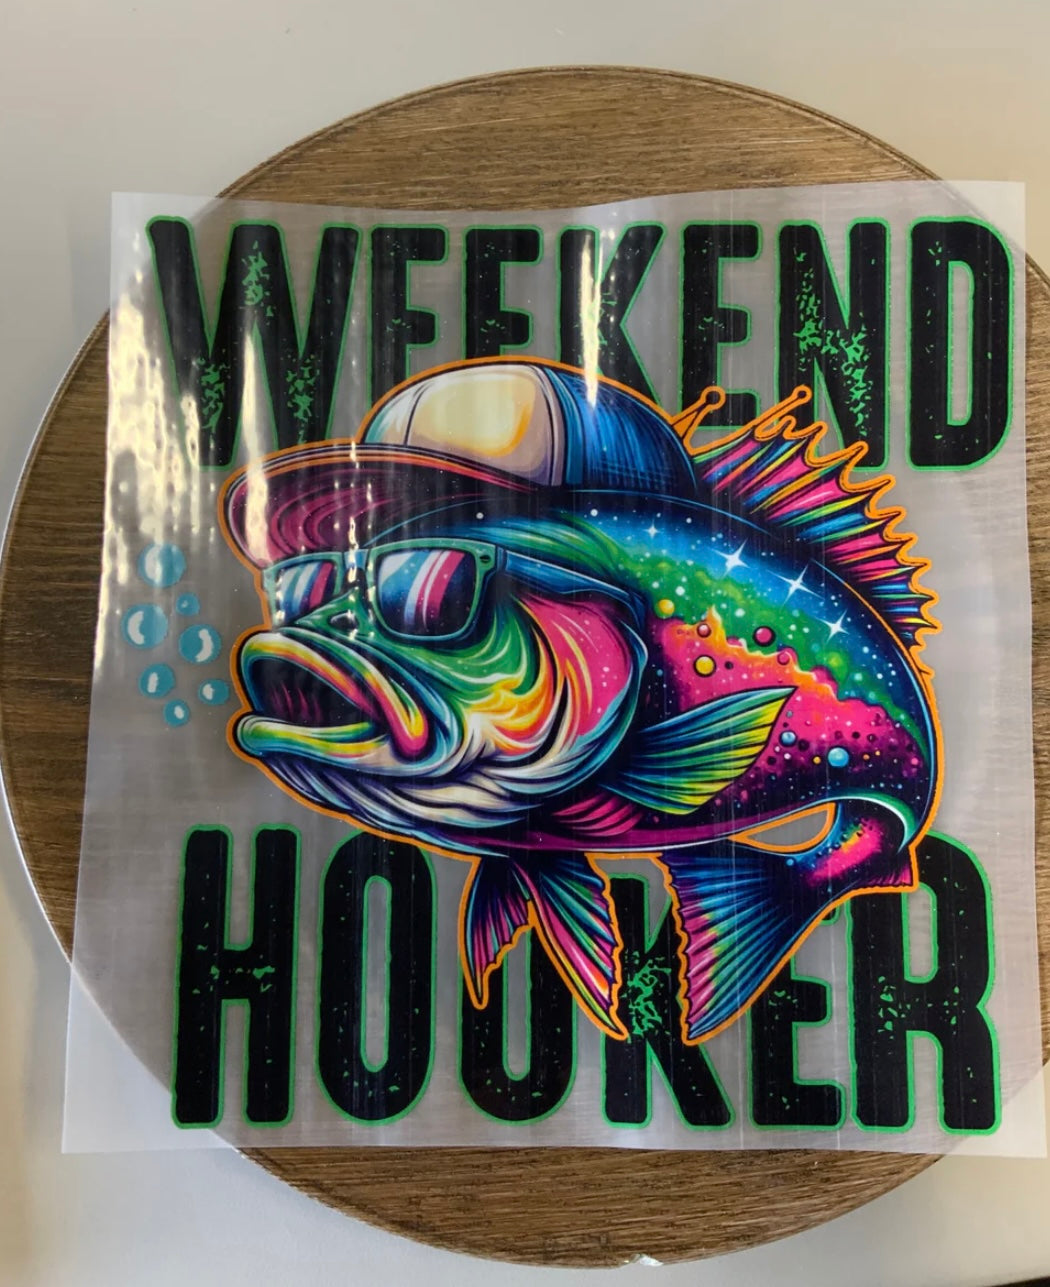 Weekend Hooker DTF